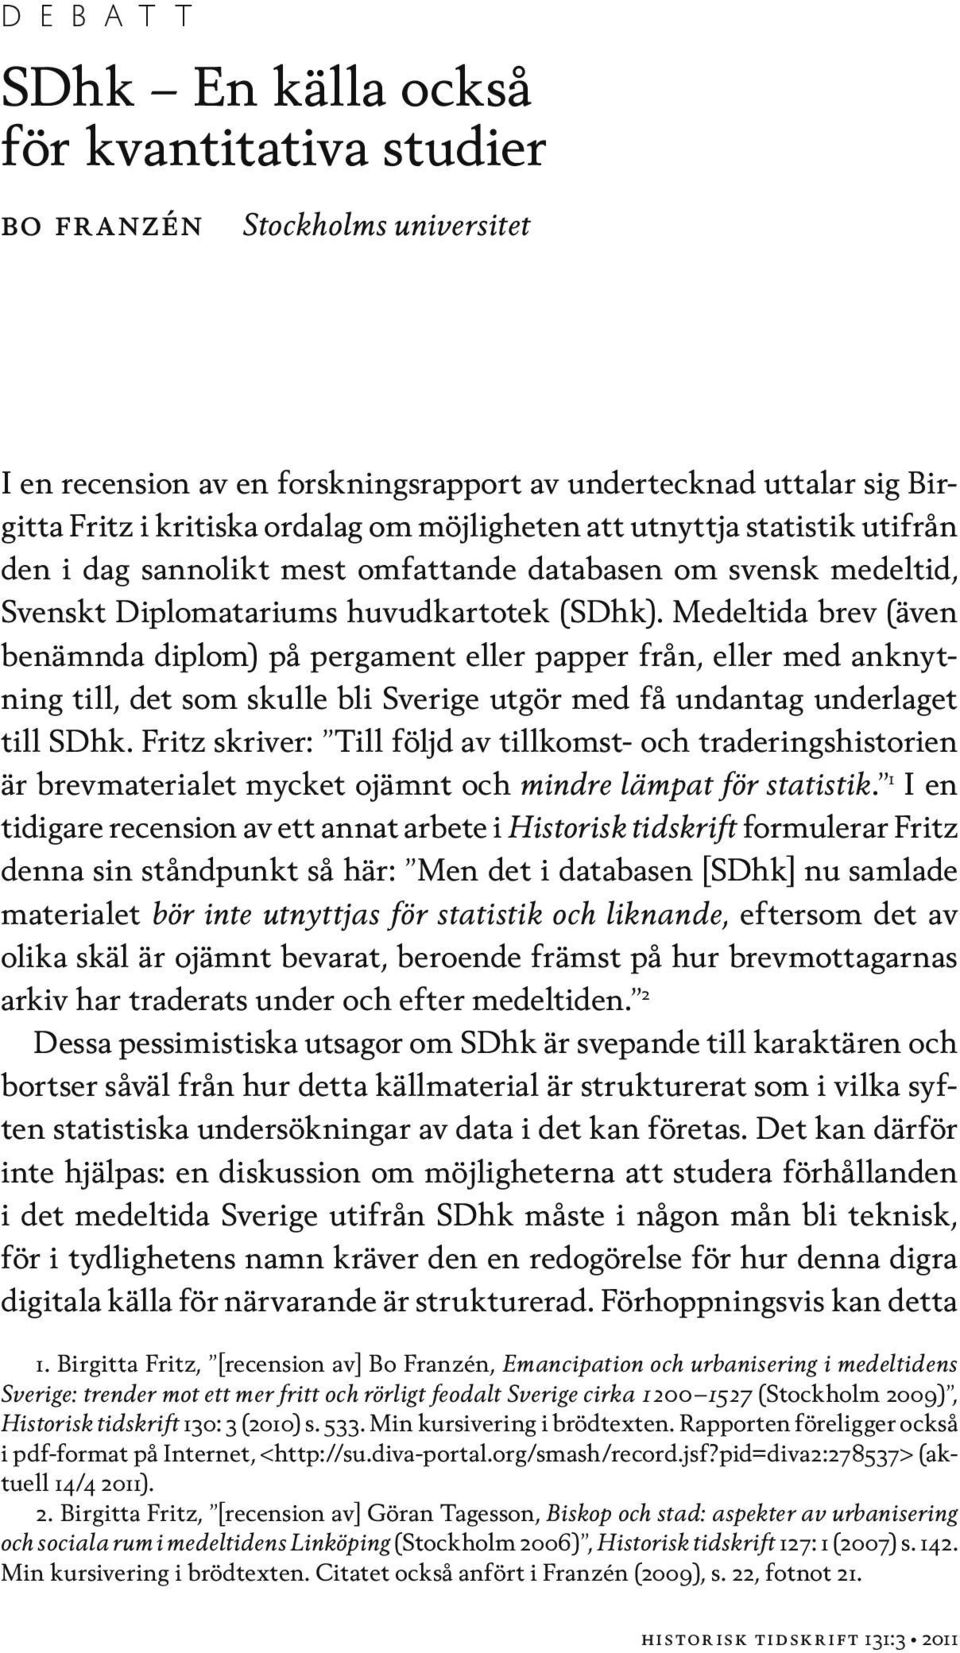 Medeltida brev (även benämnda diplom) på pergament eller papper från, eller med anknytning till, det som skulle bli Sverige utgör med få undantag underlaget till SDhk.